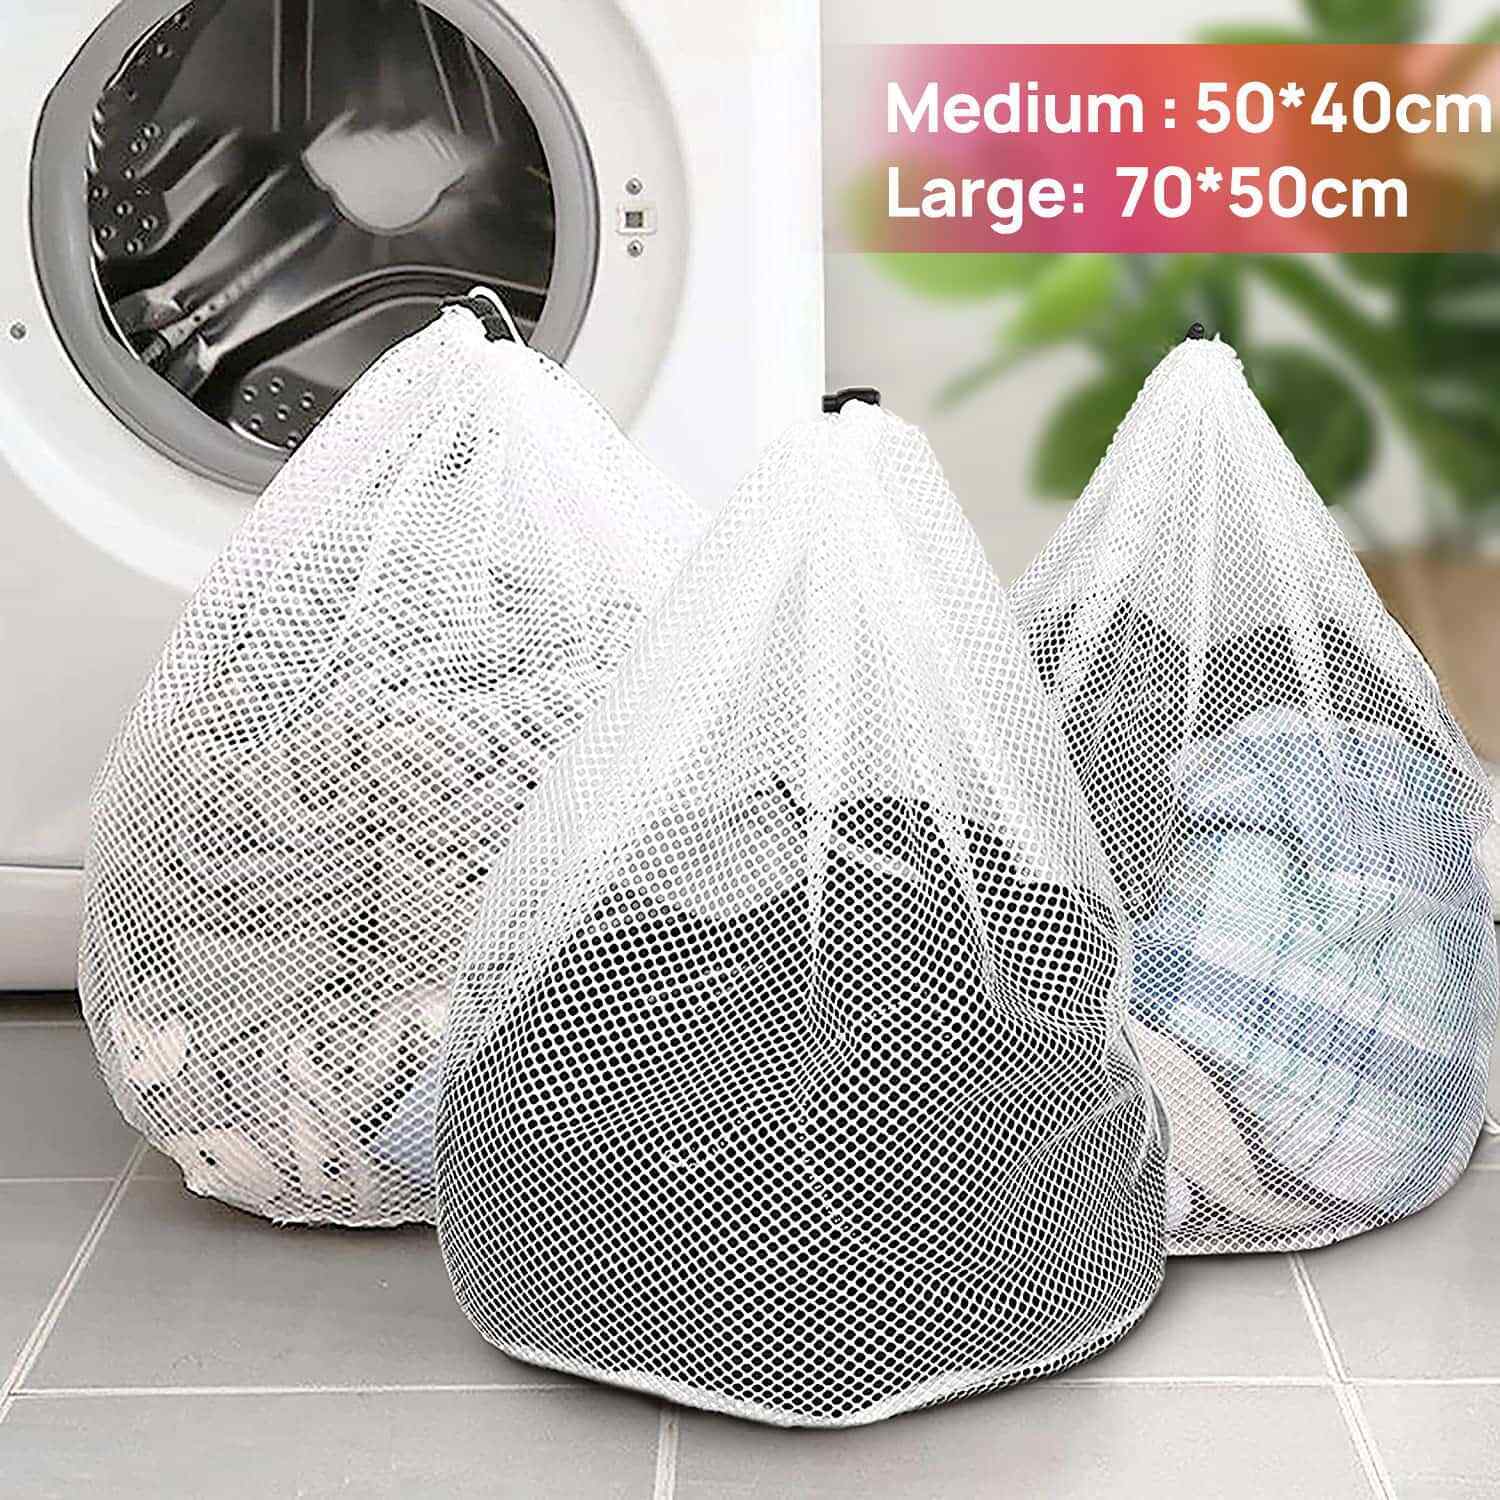 2/4 PCS Delicates Wash Bag Laundry Lingerie Bra Washing Pack Set Clothes Case